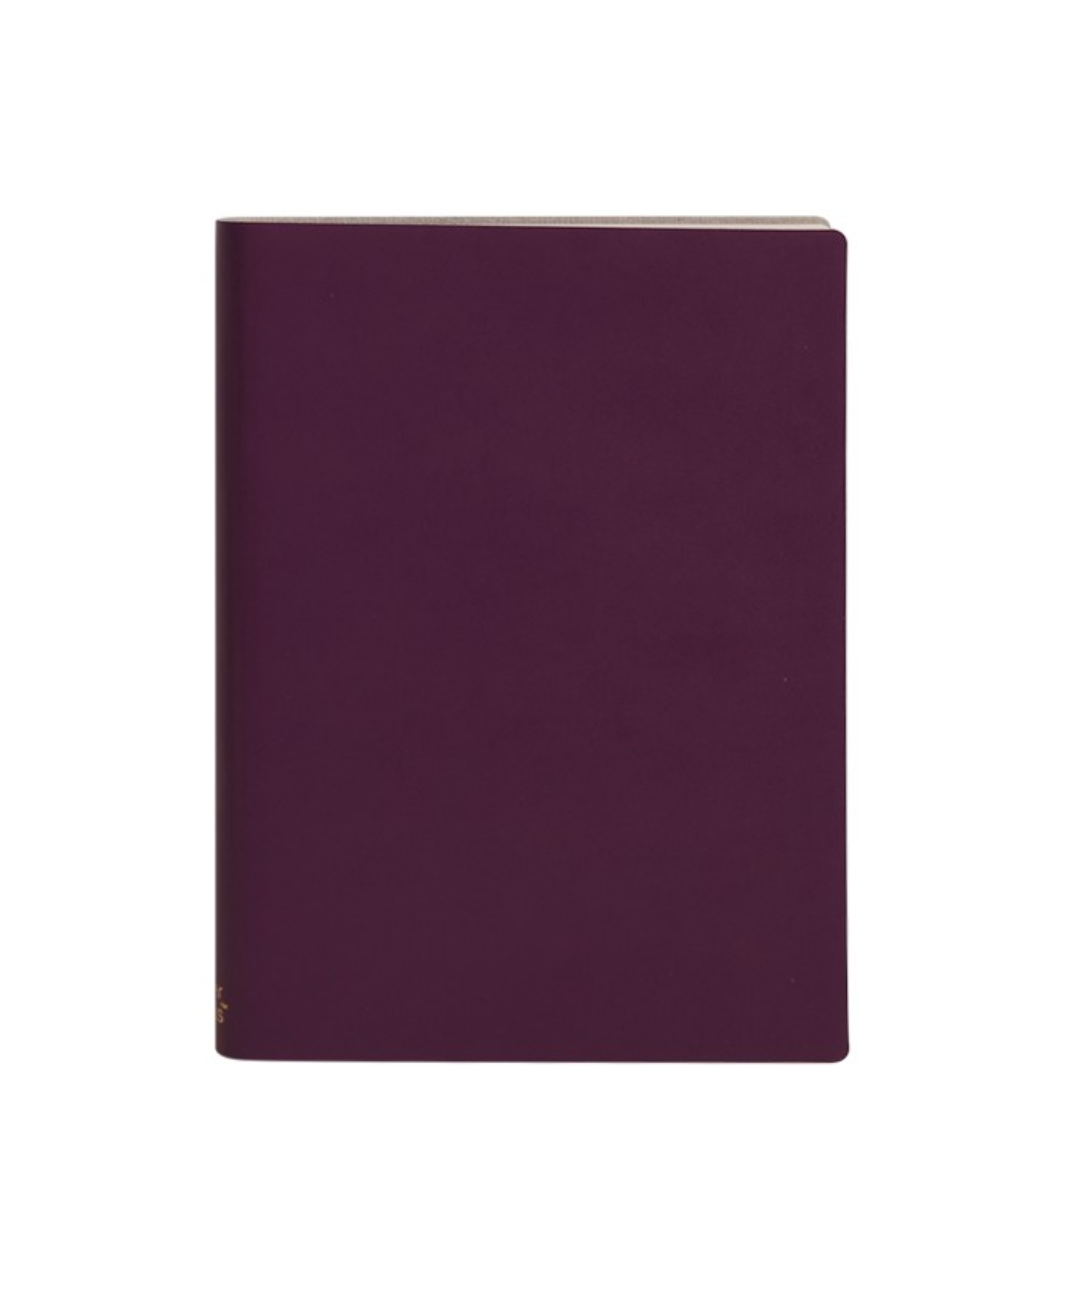 Paperthinks - Large Sketchbook Burgundy